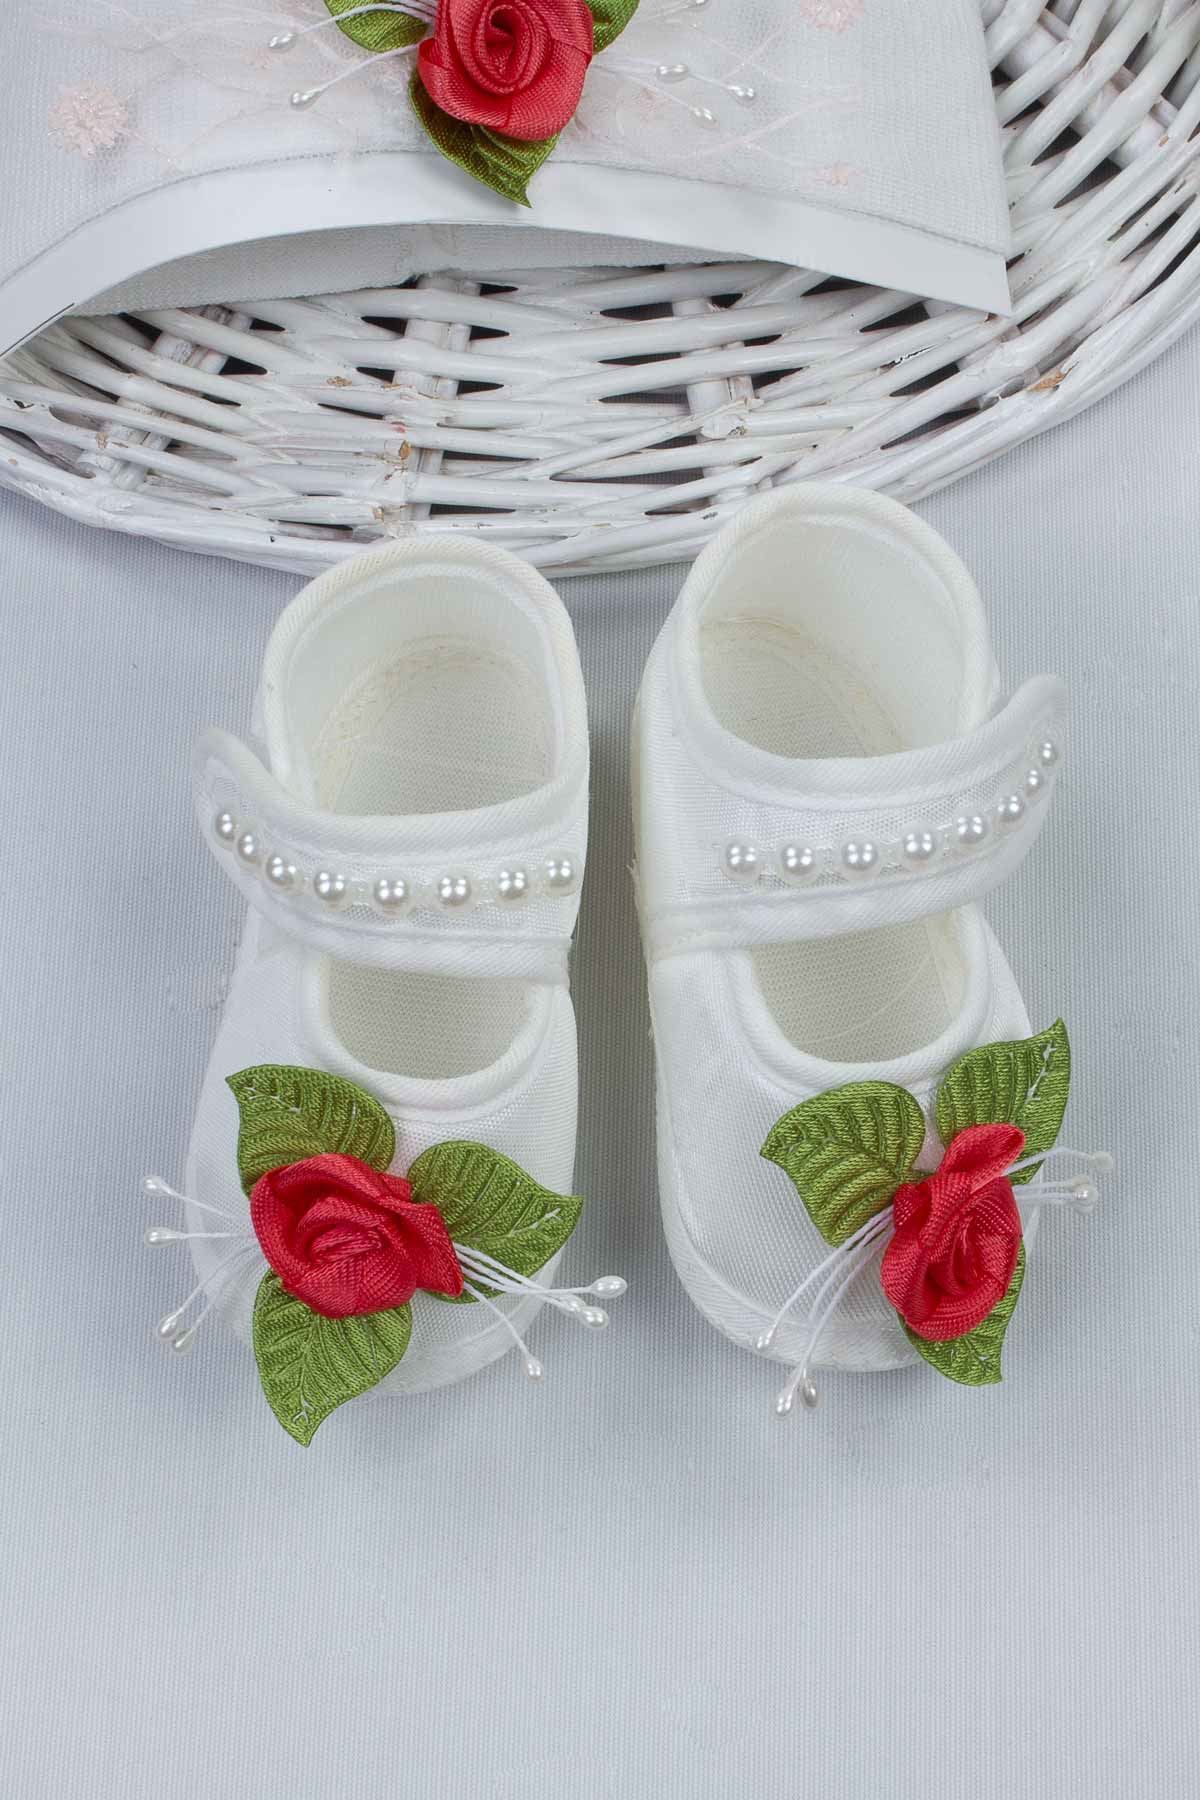 Narçiçeği Kız Bebek 3 lü Hediyelik Çorap Bandana Ayakkabı Set